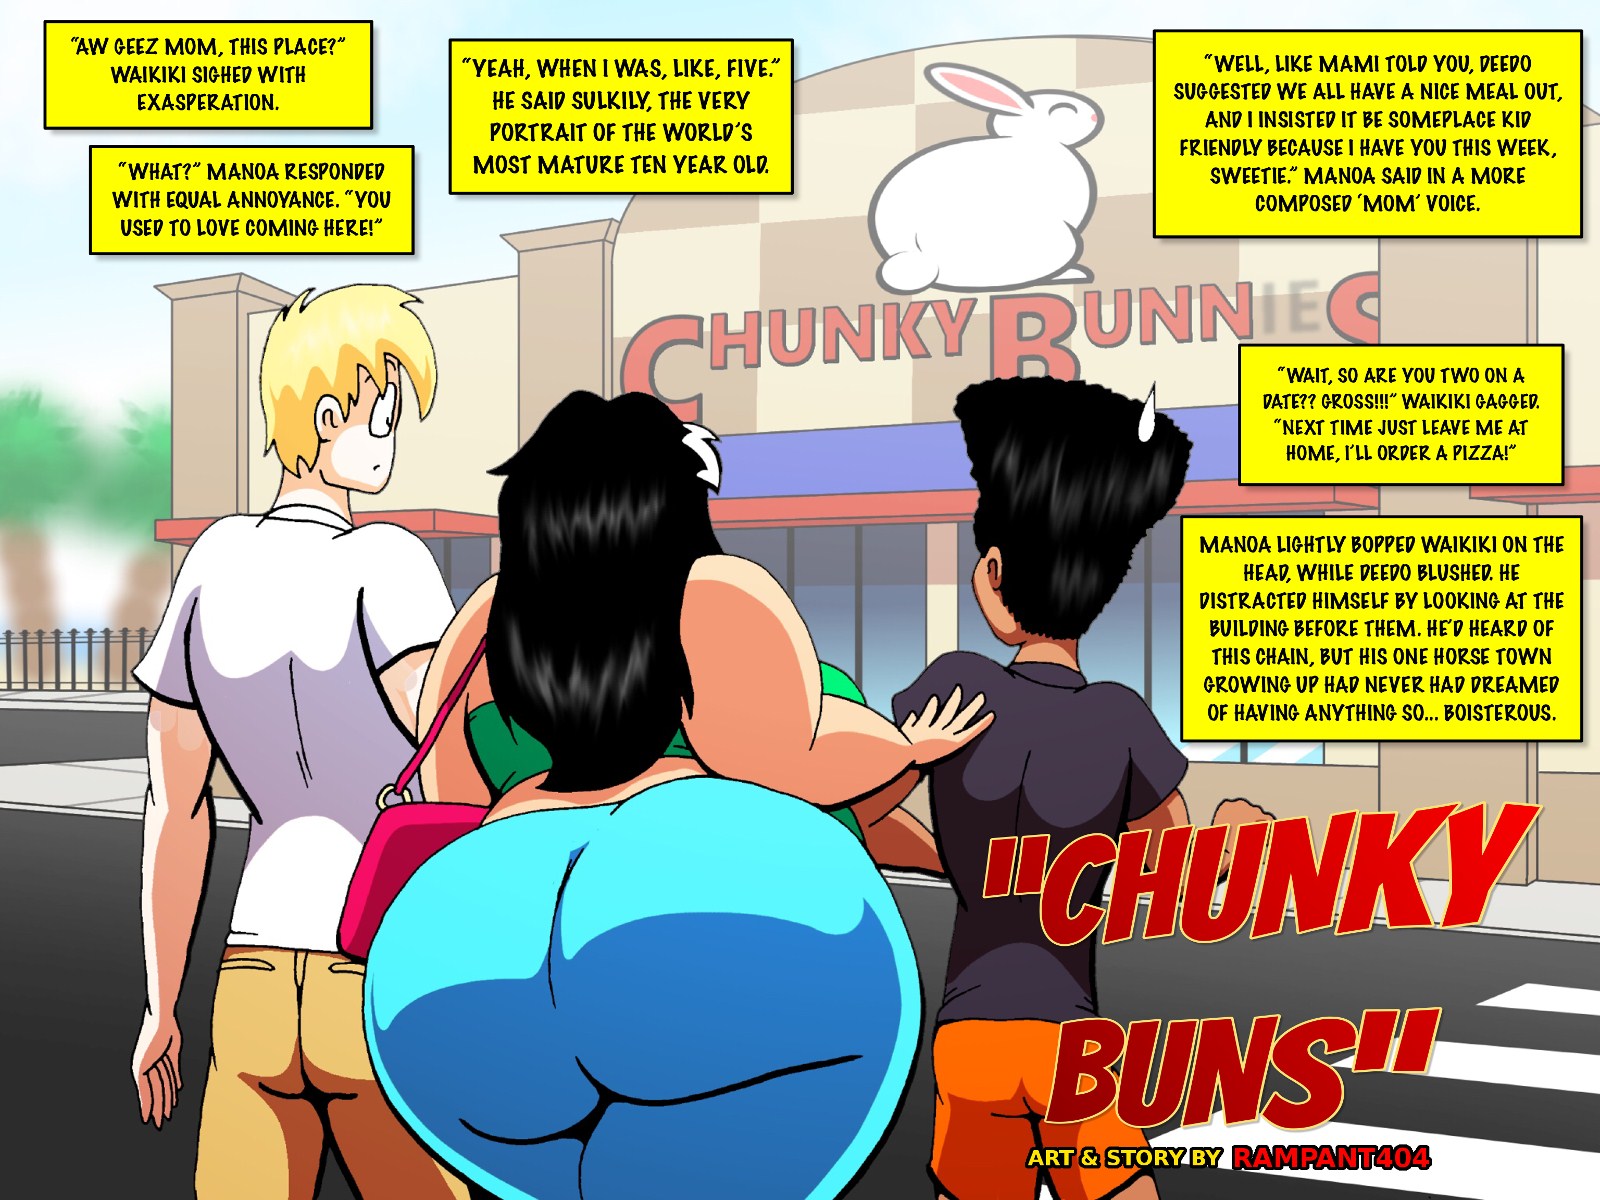 Chunky-Buns-Rampant404-1.jpg